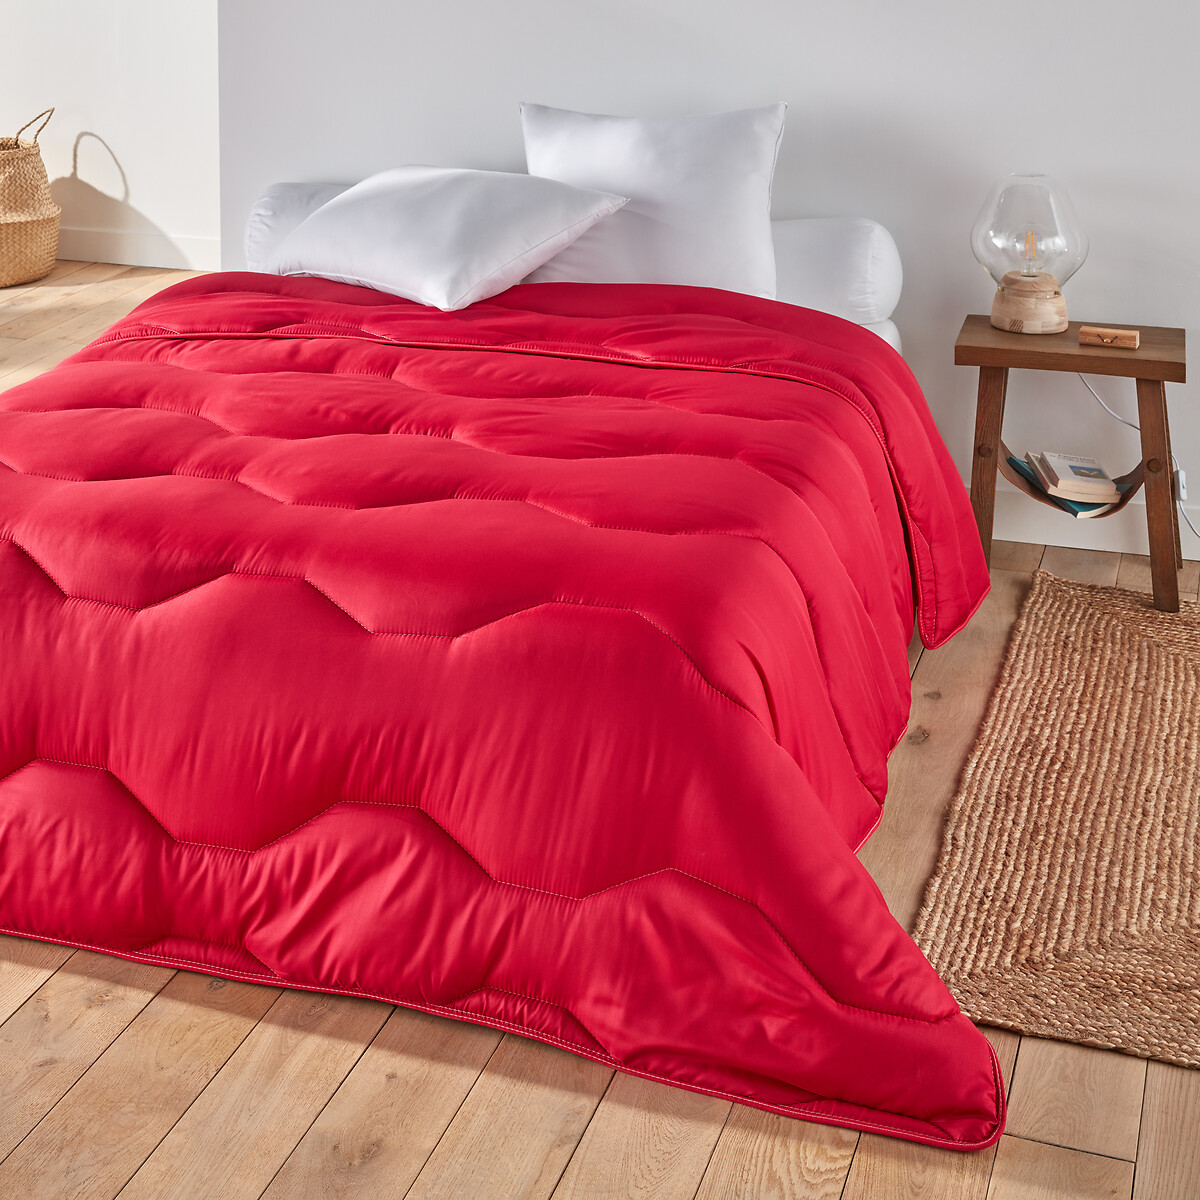 Одеяло La Redoute Rverie Color  гм 240 x 220 см красный, размер 240 x 220 см - фото 1